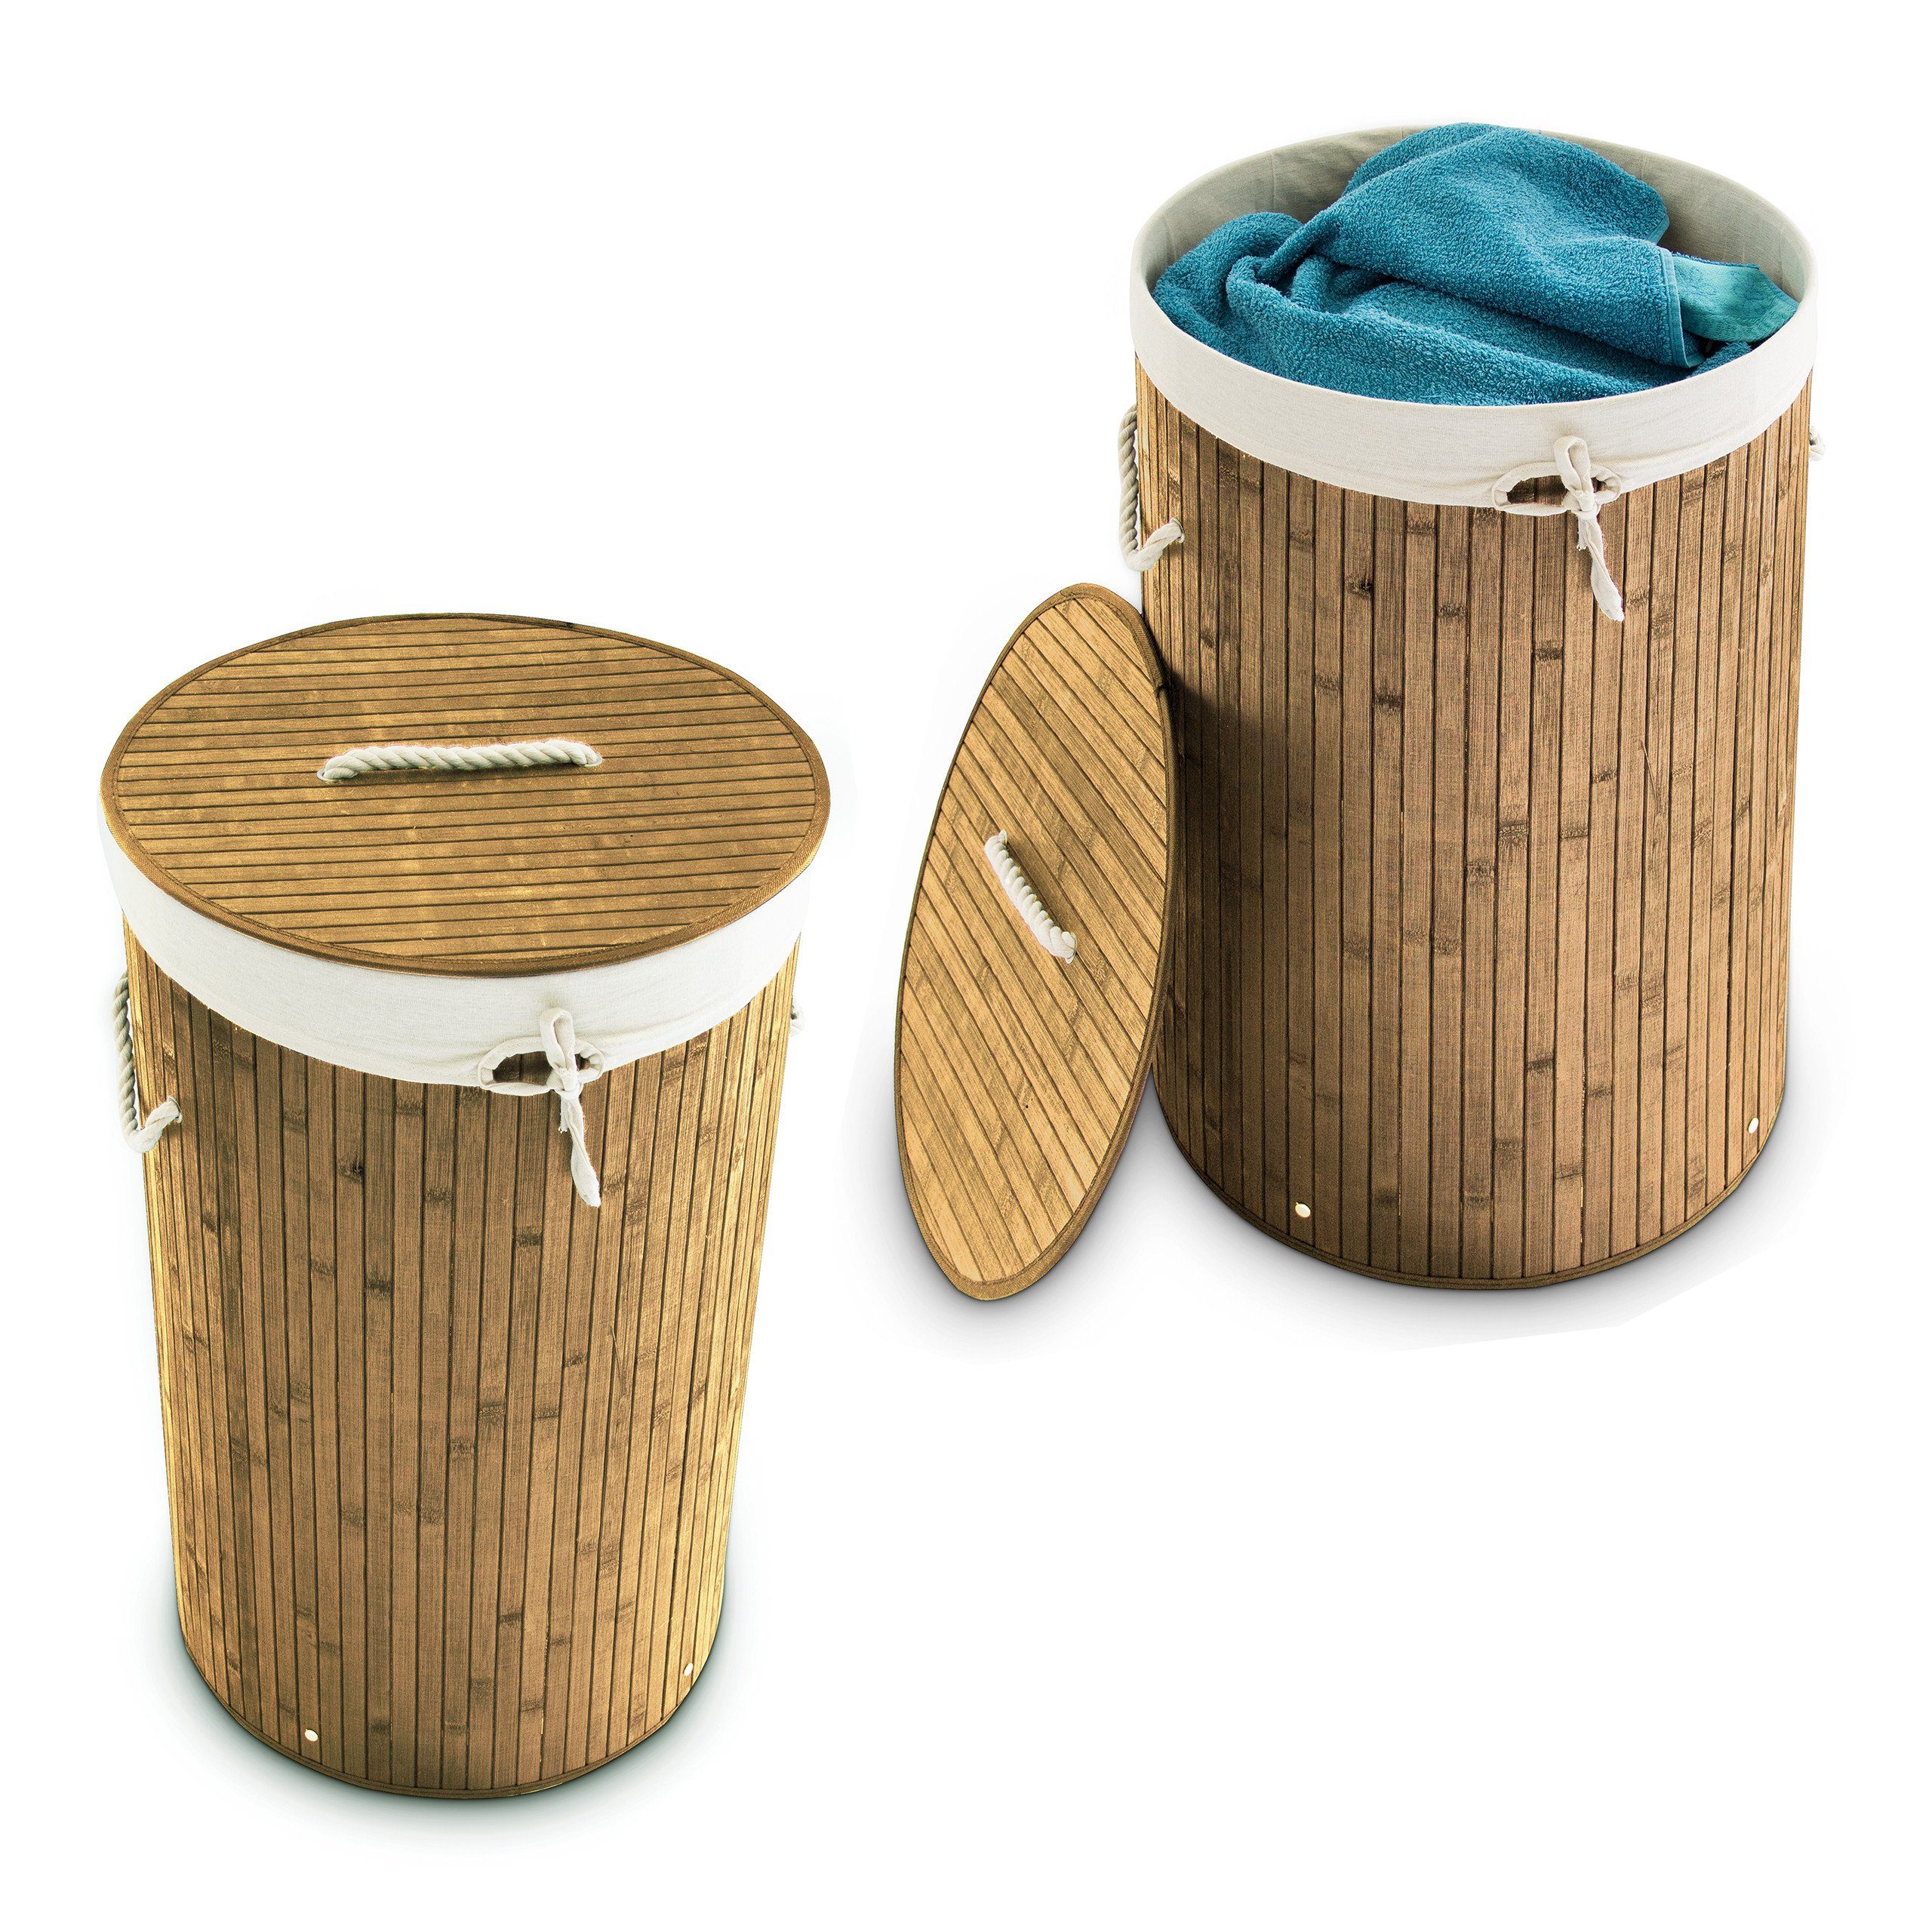 billig produzieren relaxdays Wäschekorb 2 x Wäschekorb natur rund Bambus